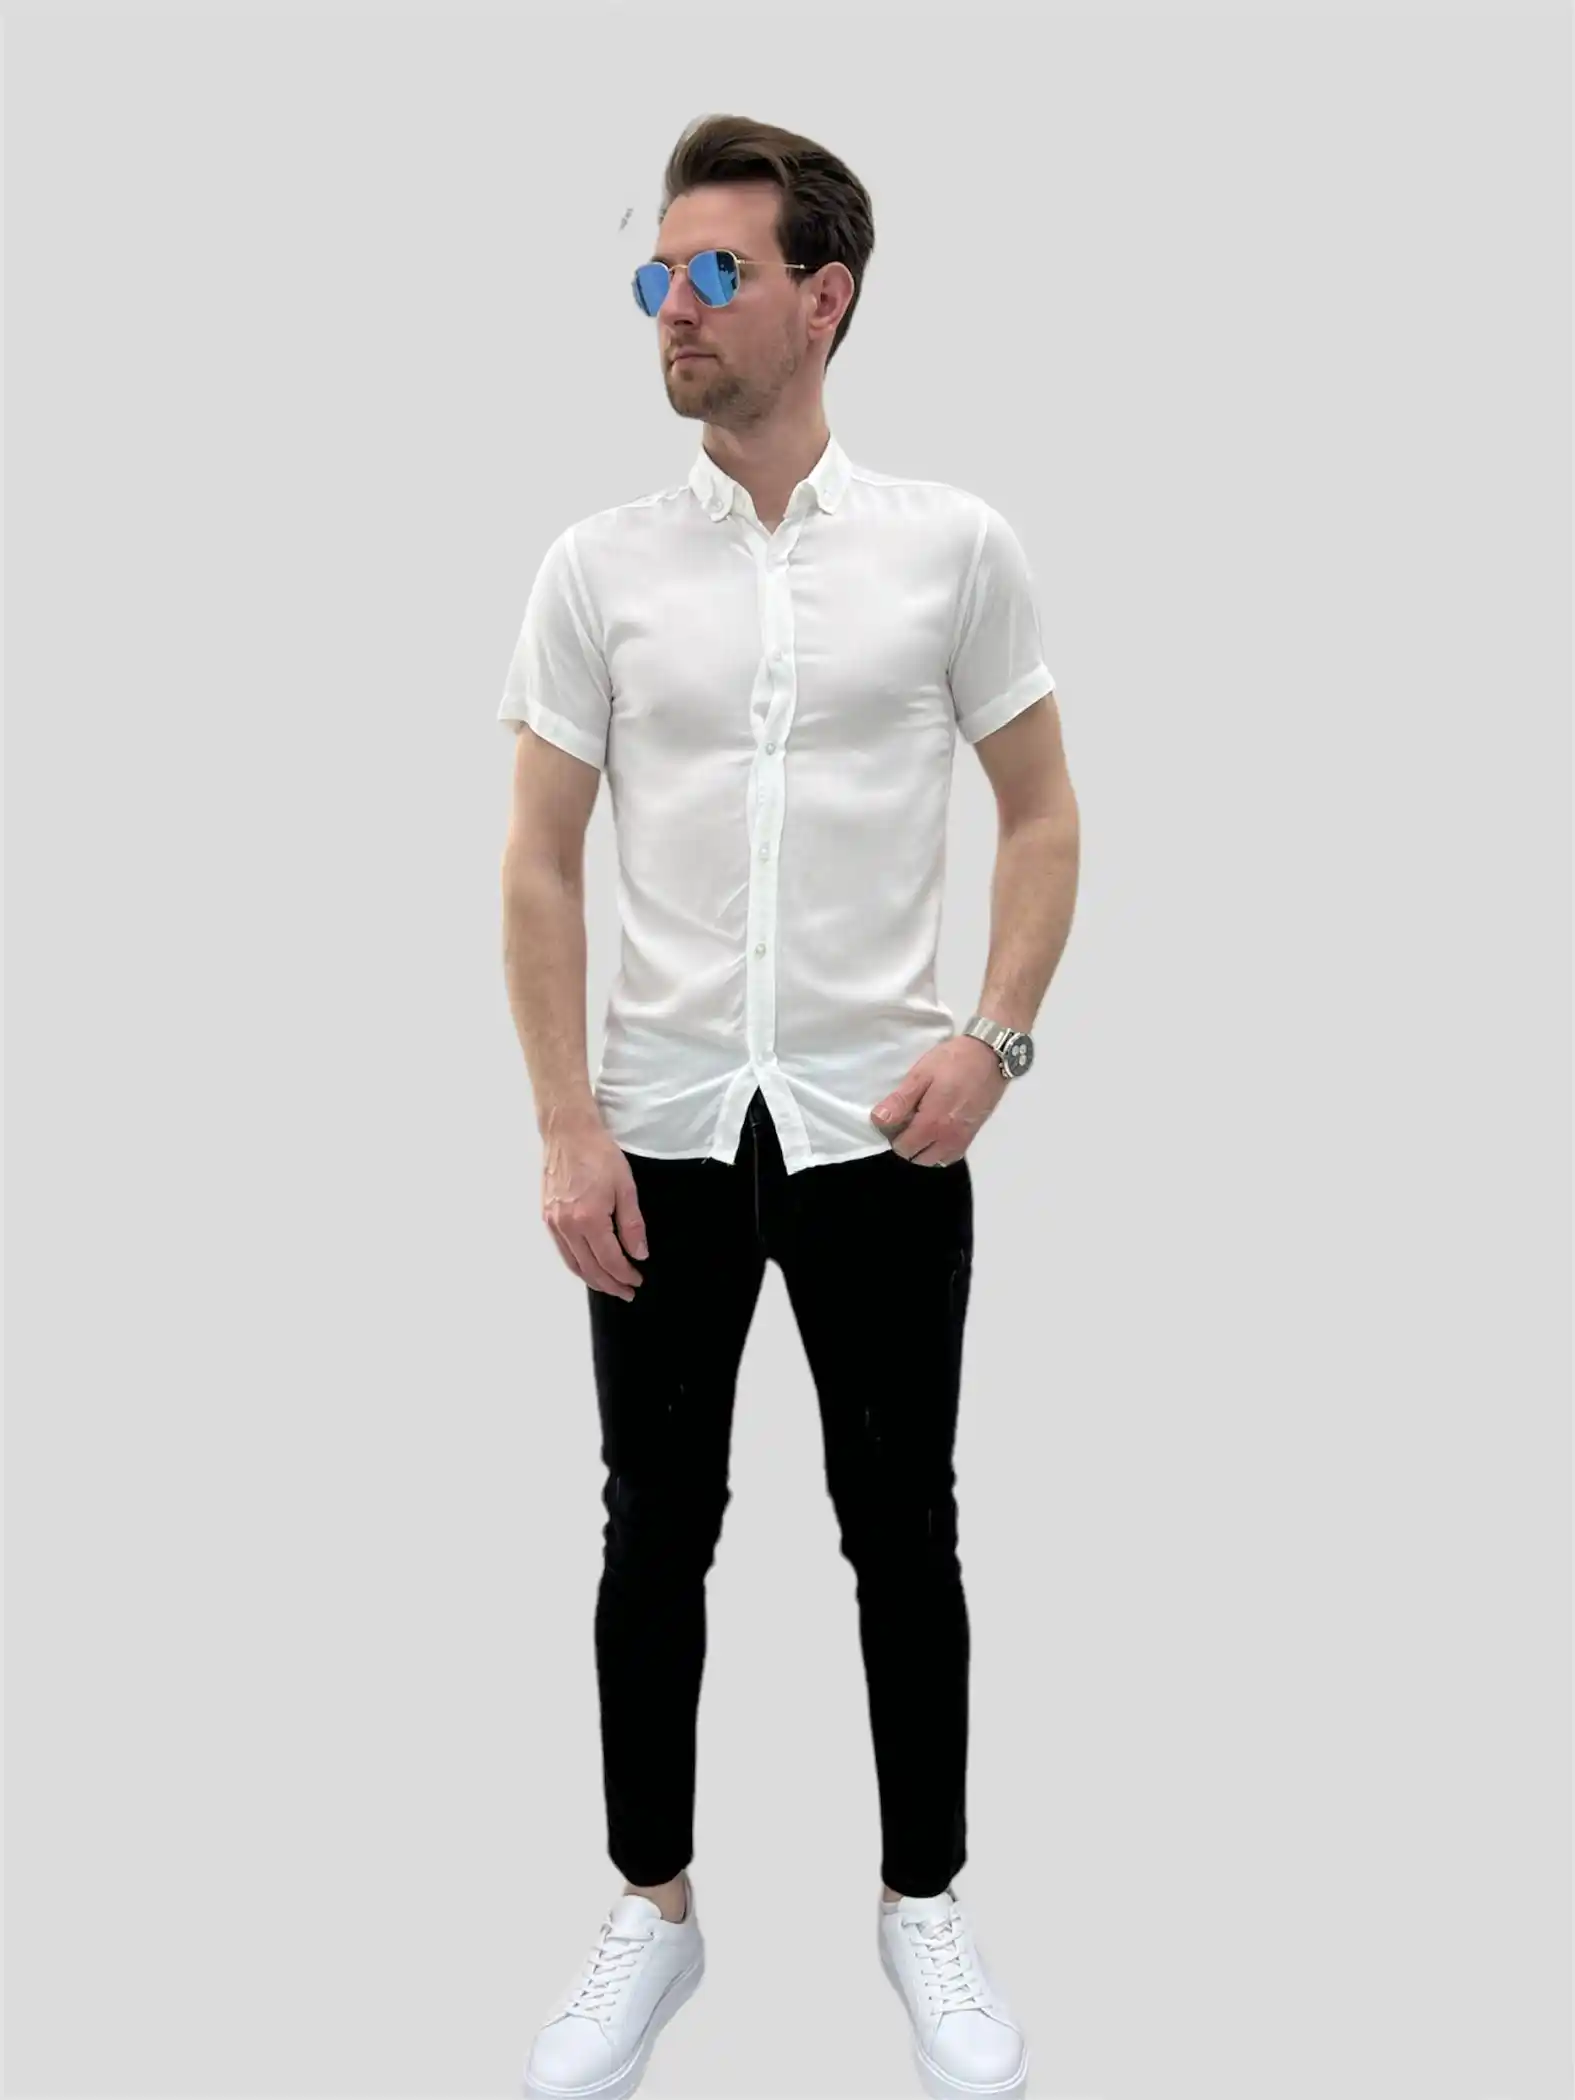 Αντρικό πουκάμισο κανονική γραμμή κοντομάνικο άσπρο